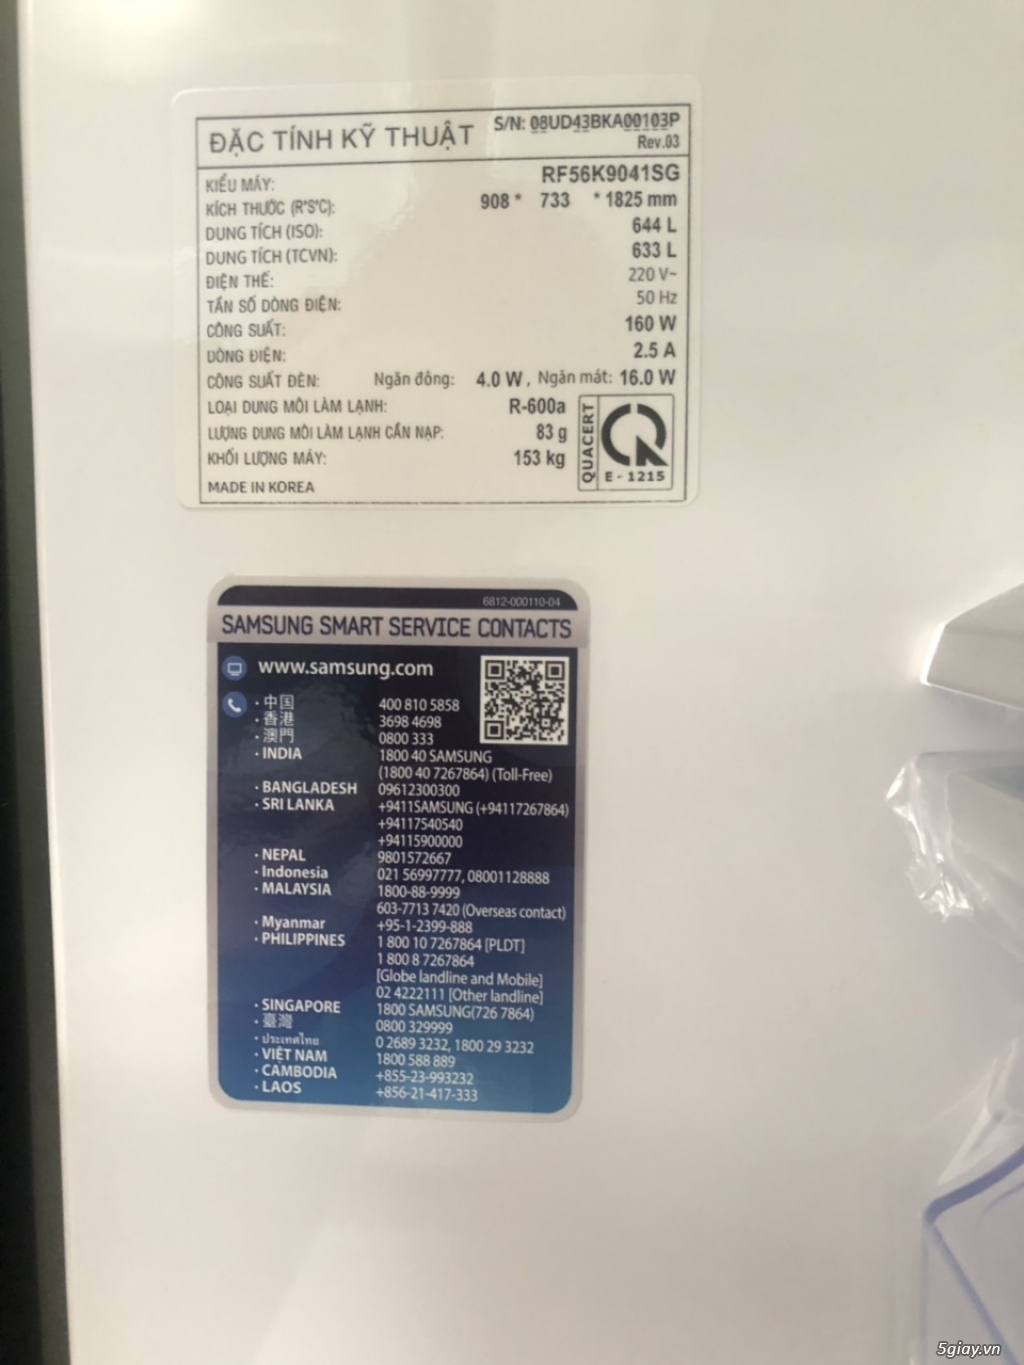 Thanh lý tủ lạnh SamSung Multidoor 644L (RF56K9041SG) - 3